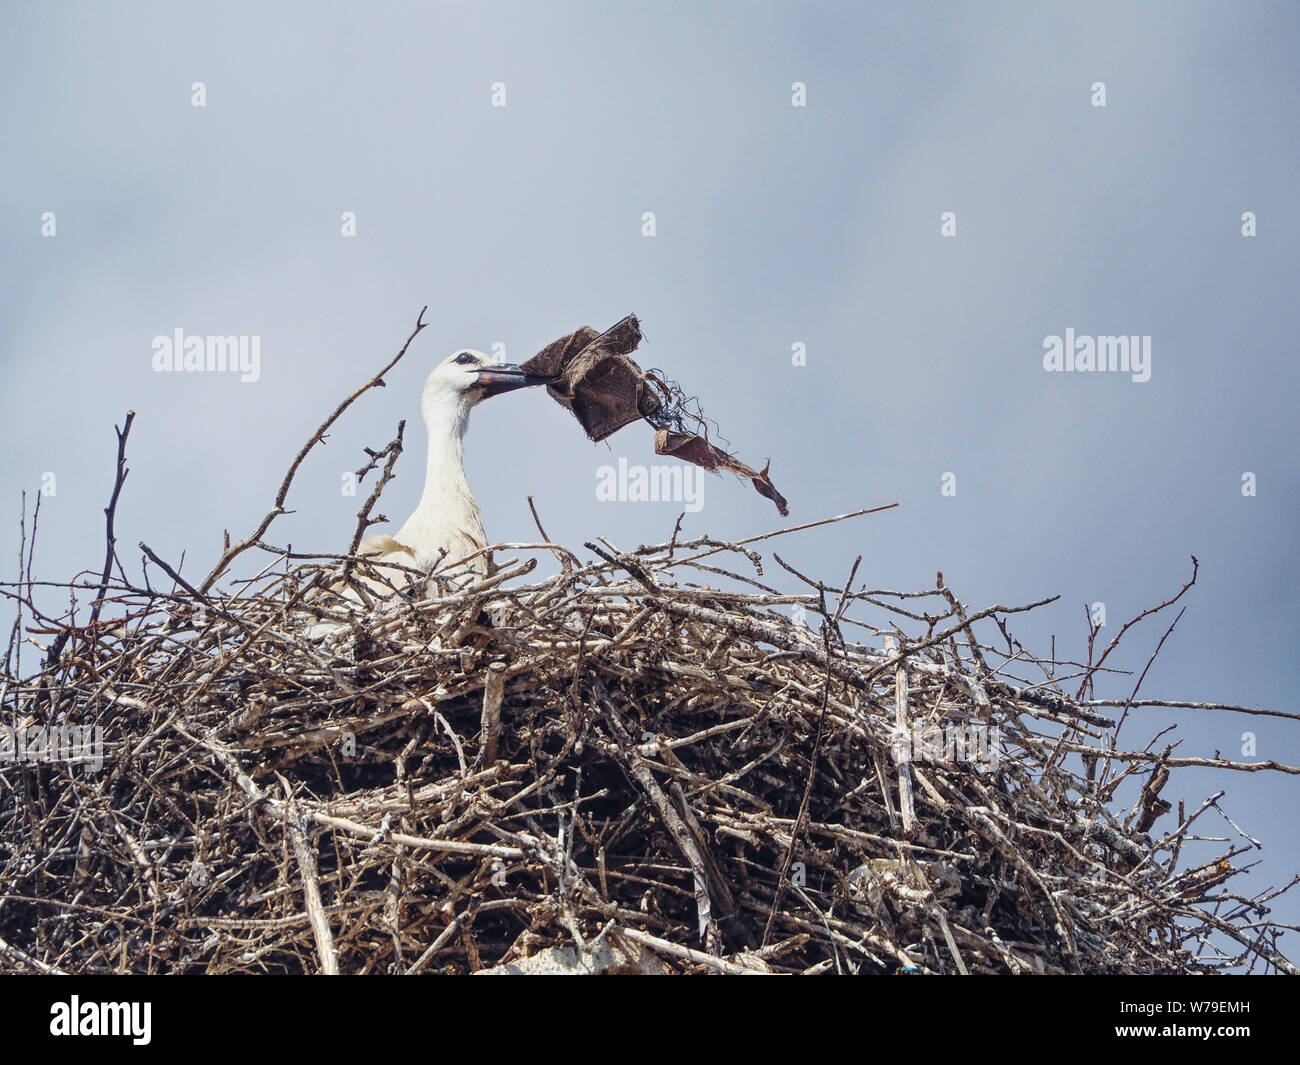 Spazzatura nel nido immagini e fotografie stock ad alta risoluzione - Alamy